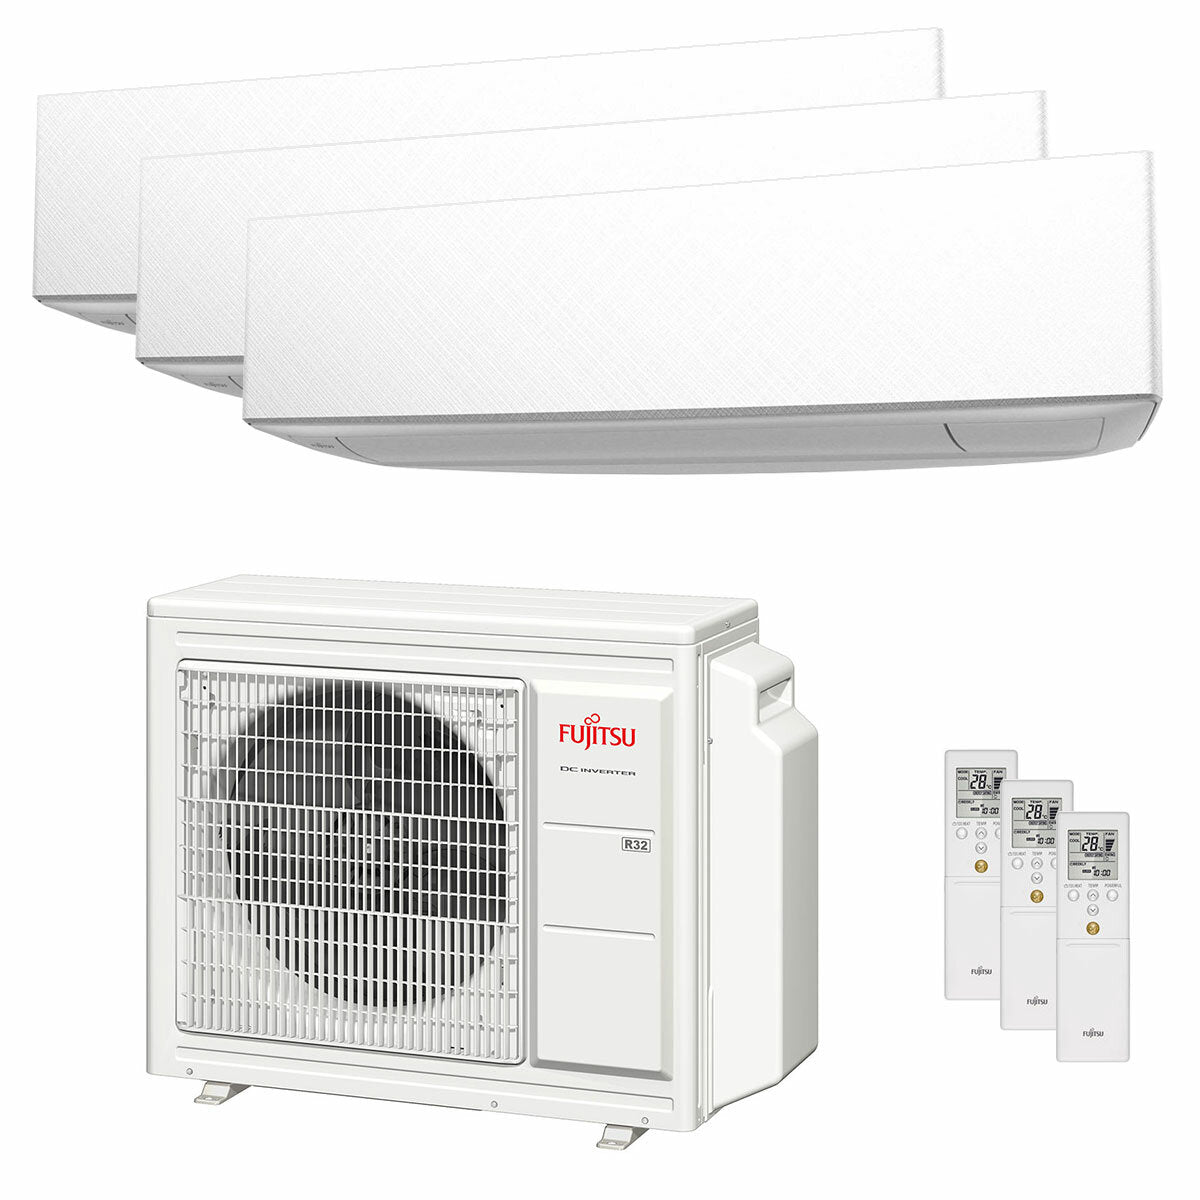 Fujitsu-Klimaanlage KE WiFi-Serie -Trial split 7000+9000+9000 BTU Inverter A+++ WiFi-Außeneinheit 5,4 kW 